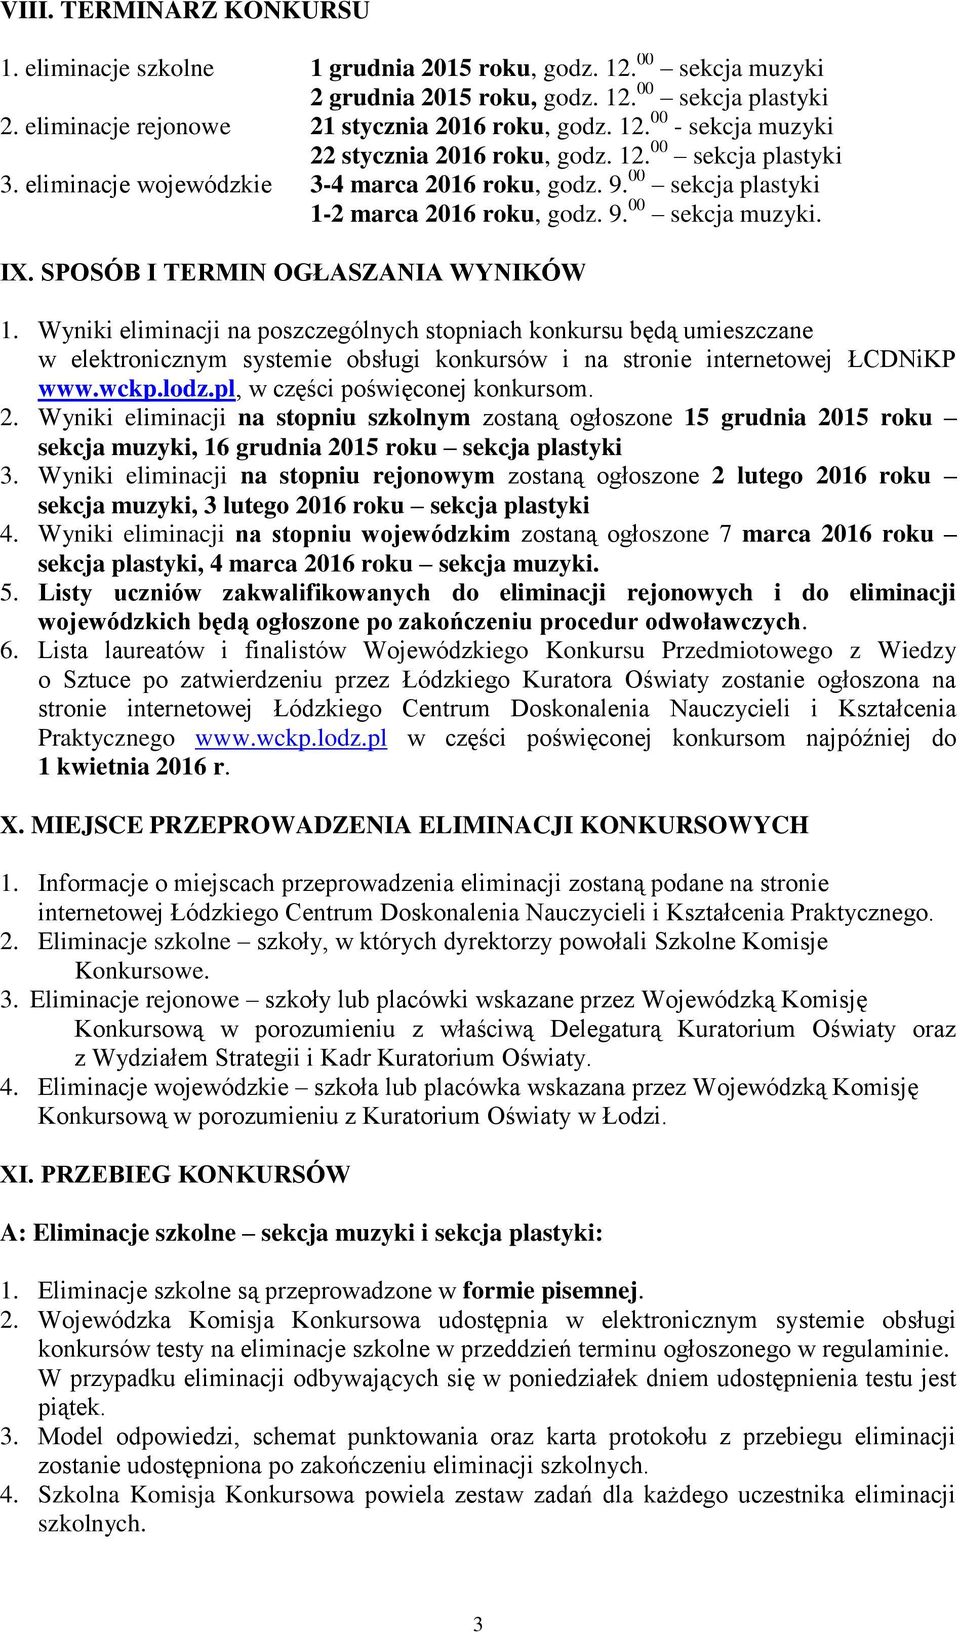 Wyniki eliminacji na poszczególnych stopniach konkursu będą umieszczane w elektronicznym systemie obsługi konkursów i na stronie internetowej ŁCDNiKP www.wckp.lodz.pl, w części poświęconej konkursom.